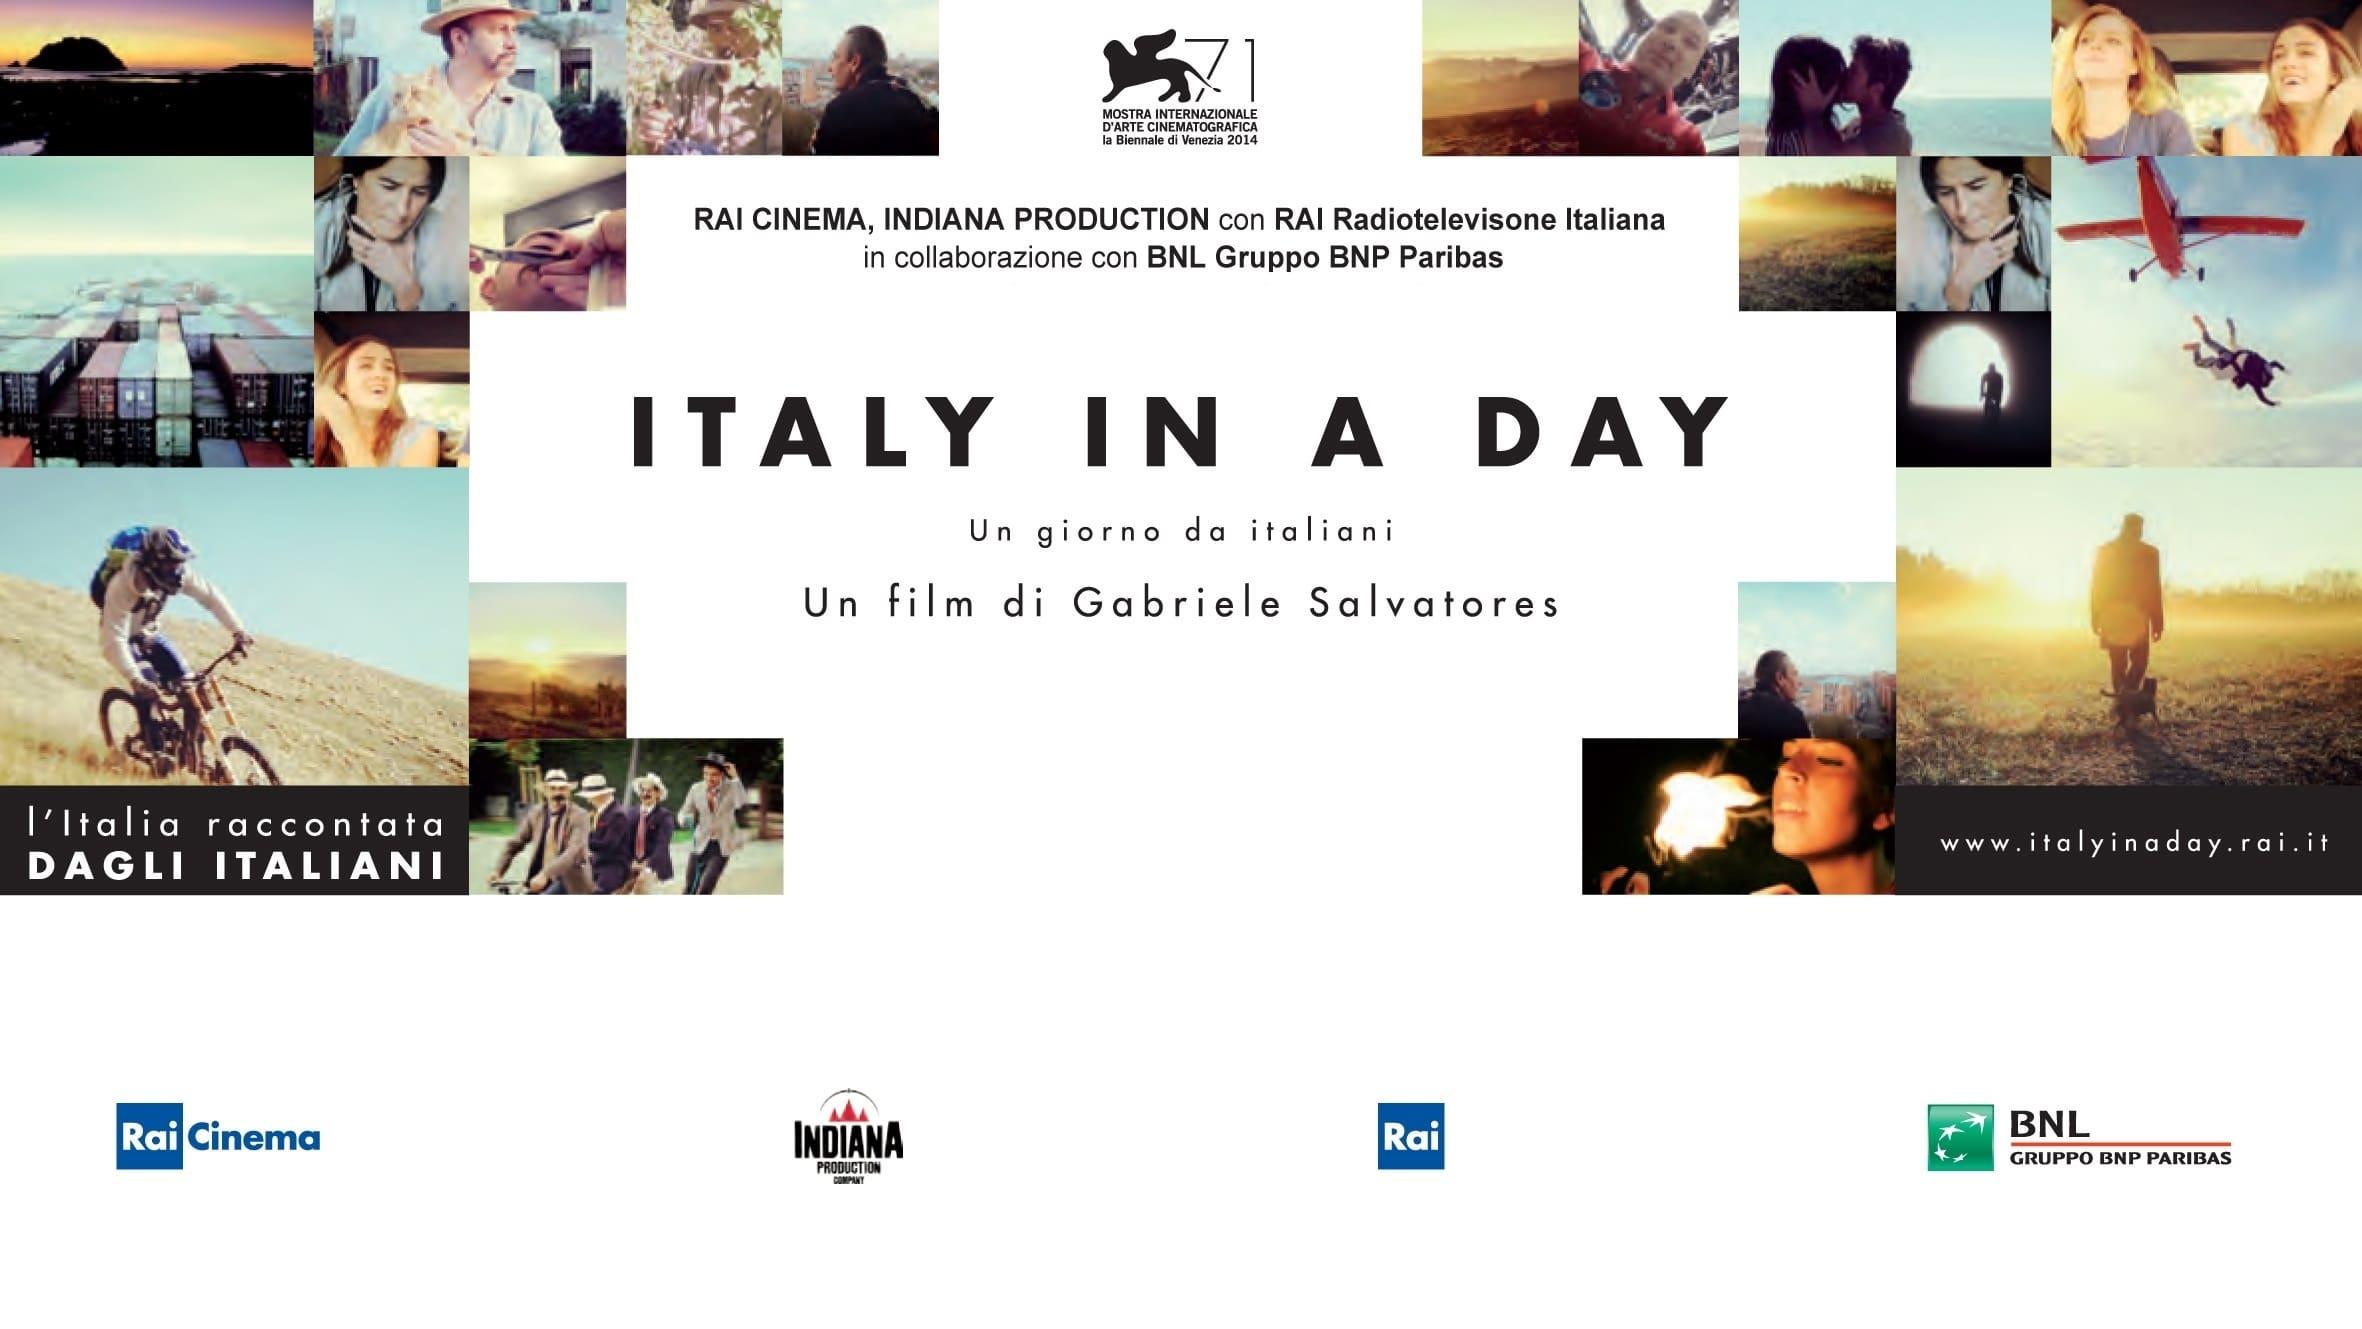 Italy in a Day - Un giorno da italiani backdrop